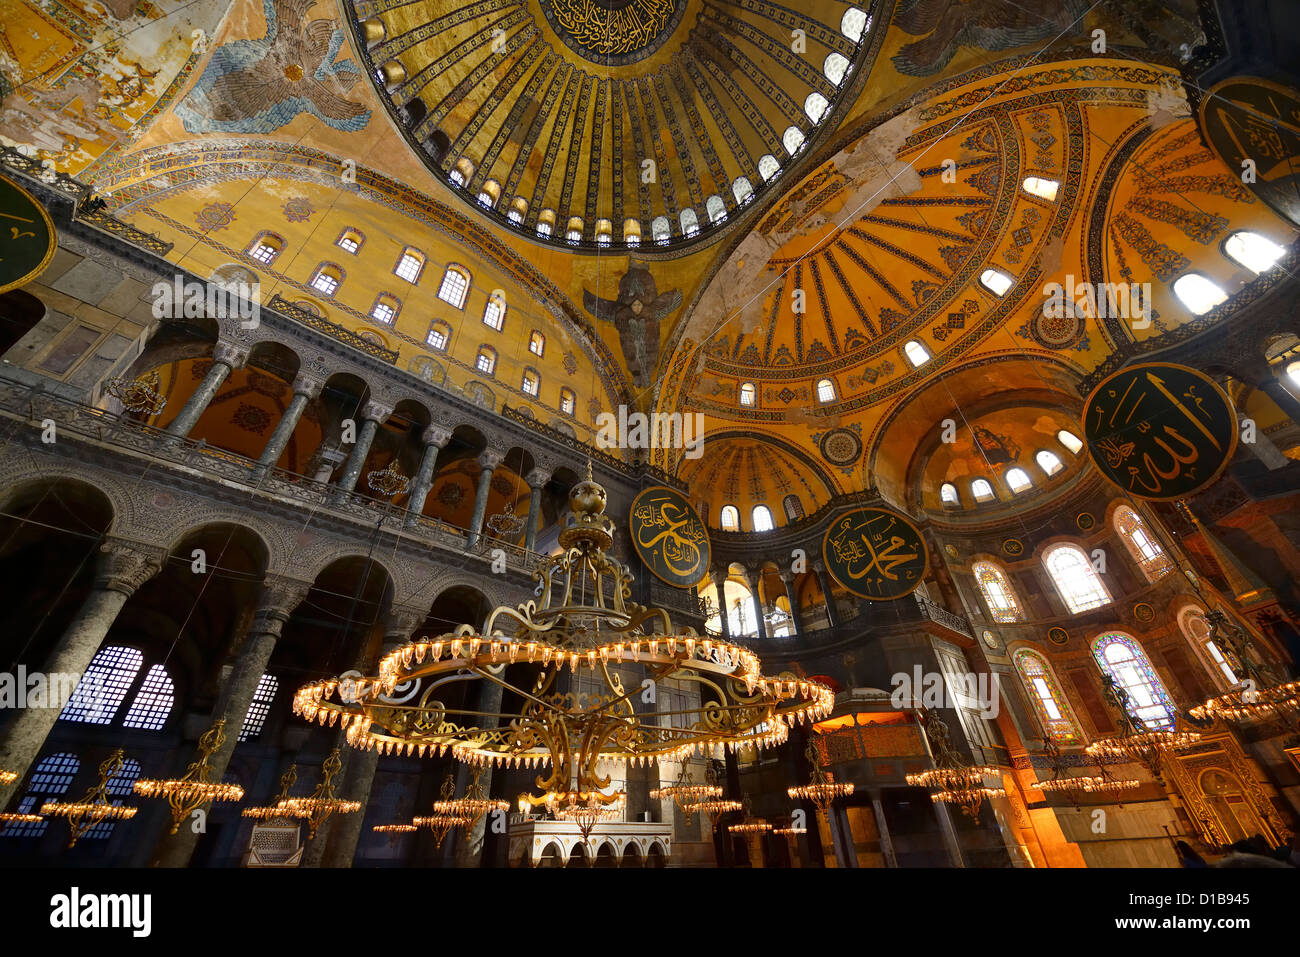 Plafond d'or et lustres éclairés dômes dans l'Hagia Sophia Istanbul Turquie Banque D'Images